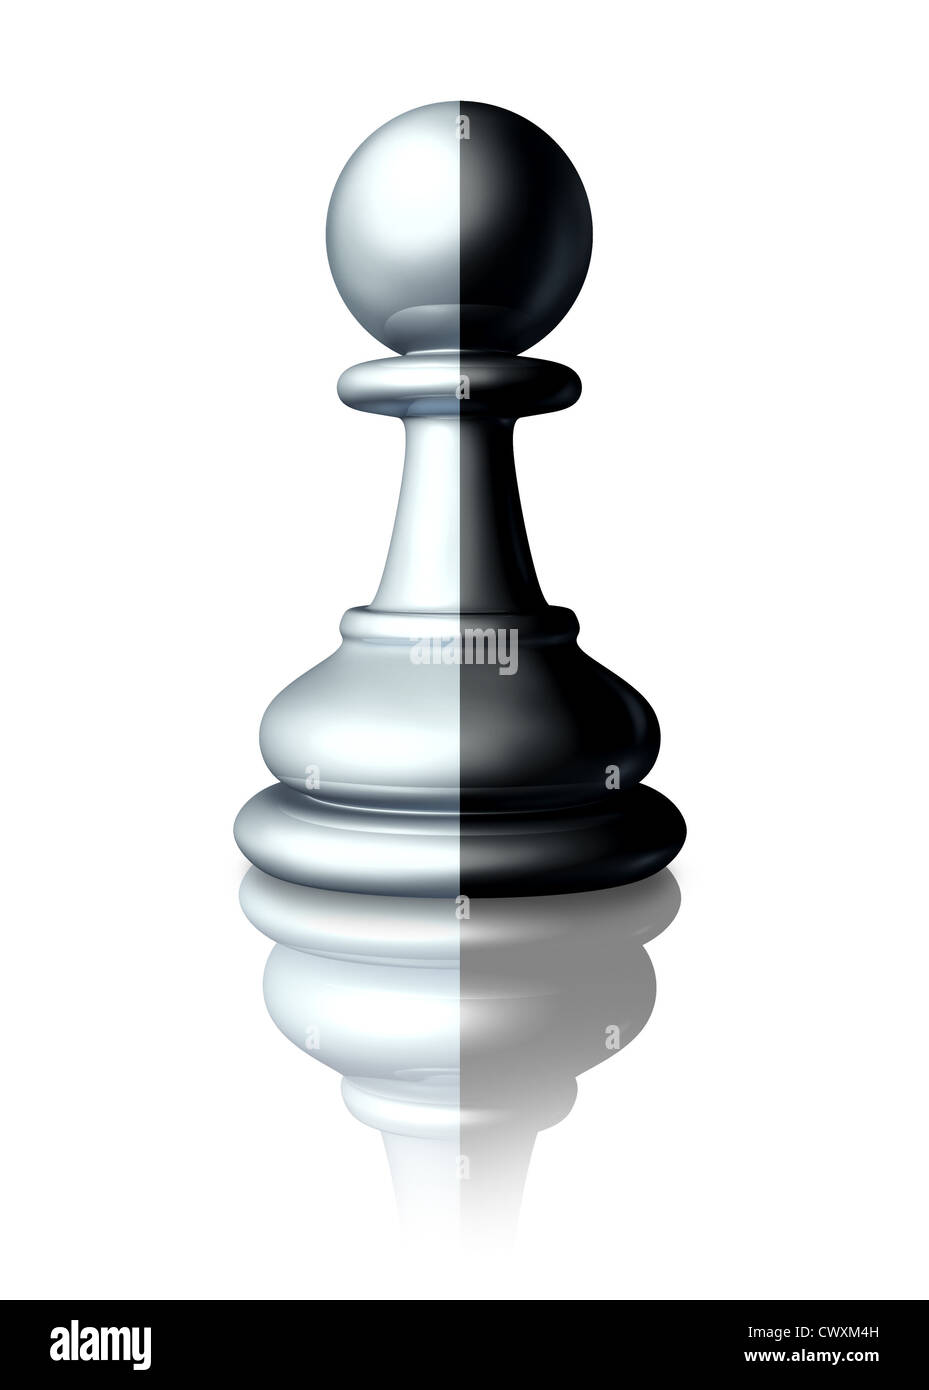 Deux face ou double agent secret agent symbolisé par un pion d'échecs qui est peint en blanc et noir comme un menteur malhonnête de prétendre être quelqu'un d'autre ou un symbole de la race ethnique et l'égalité raciale. Banque D'Images